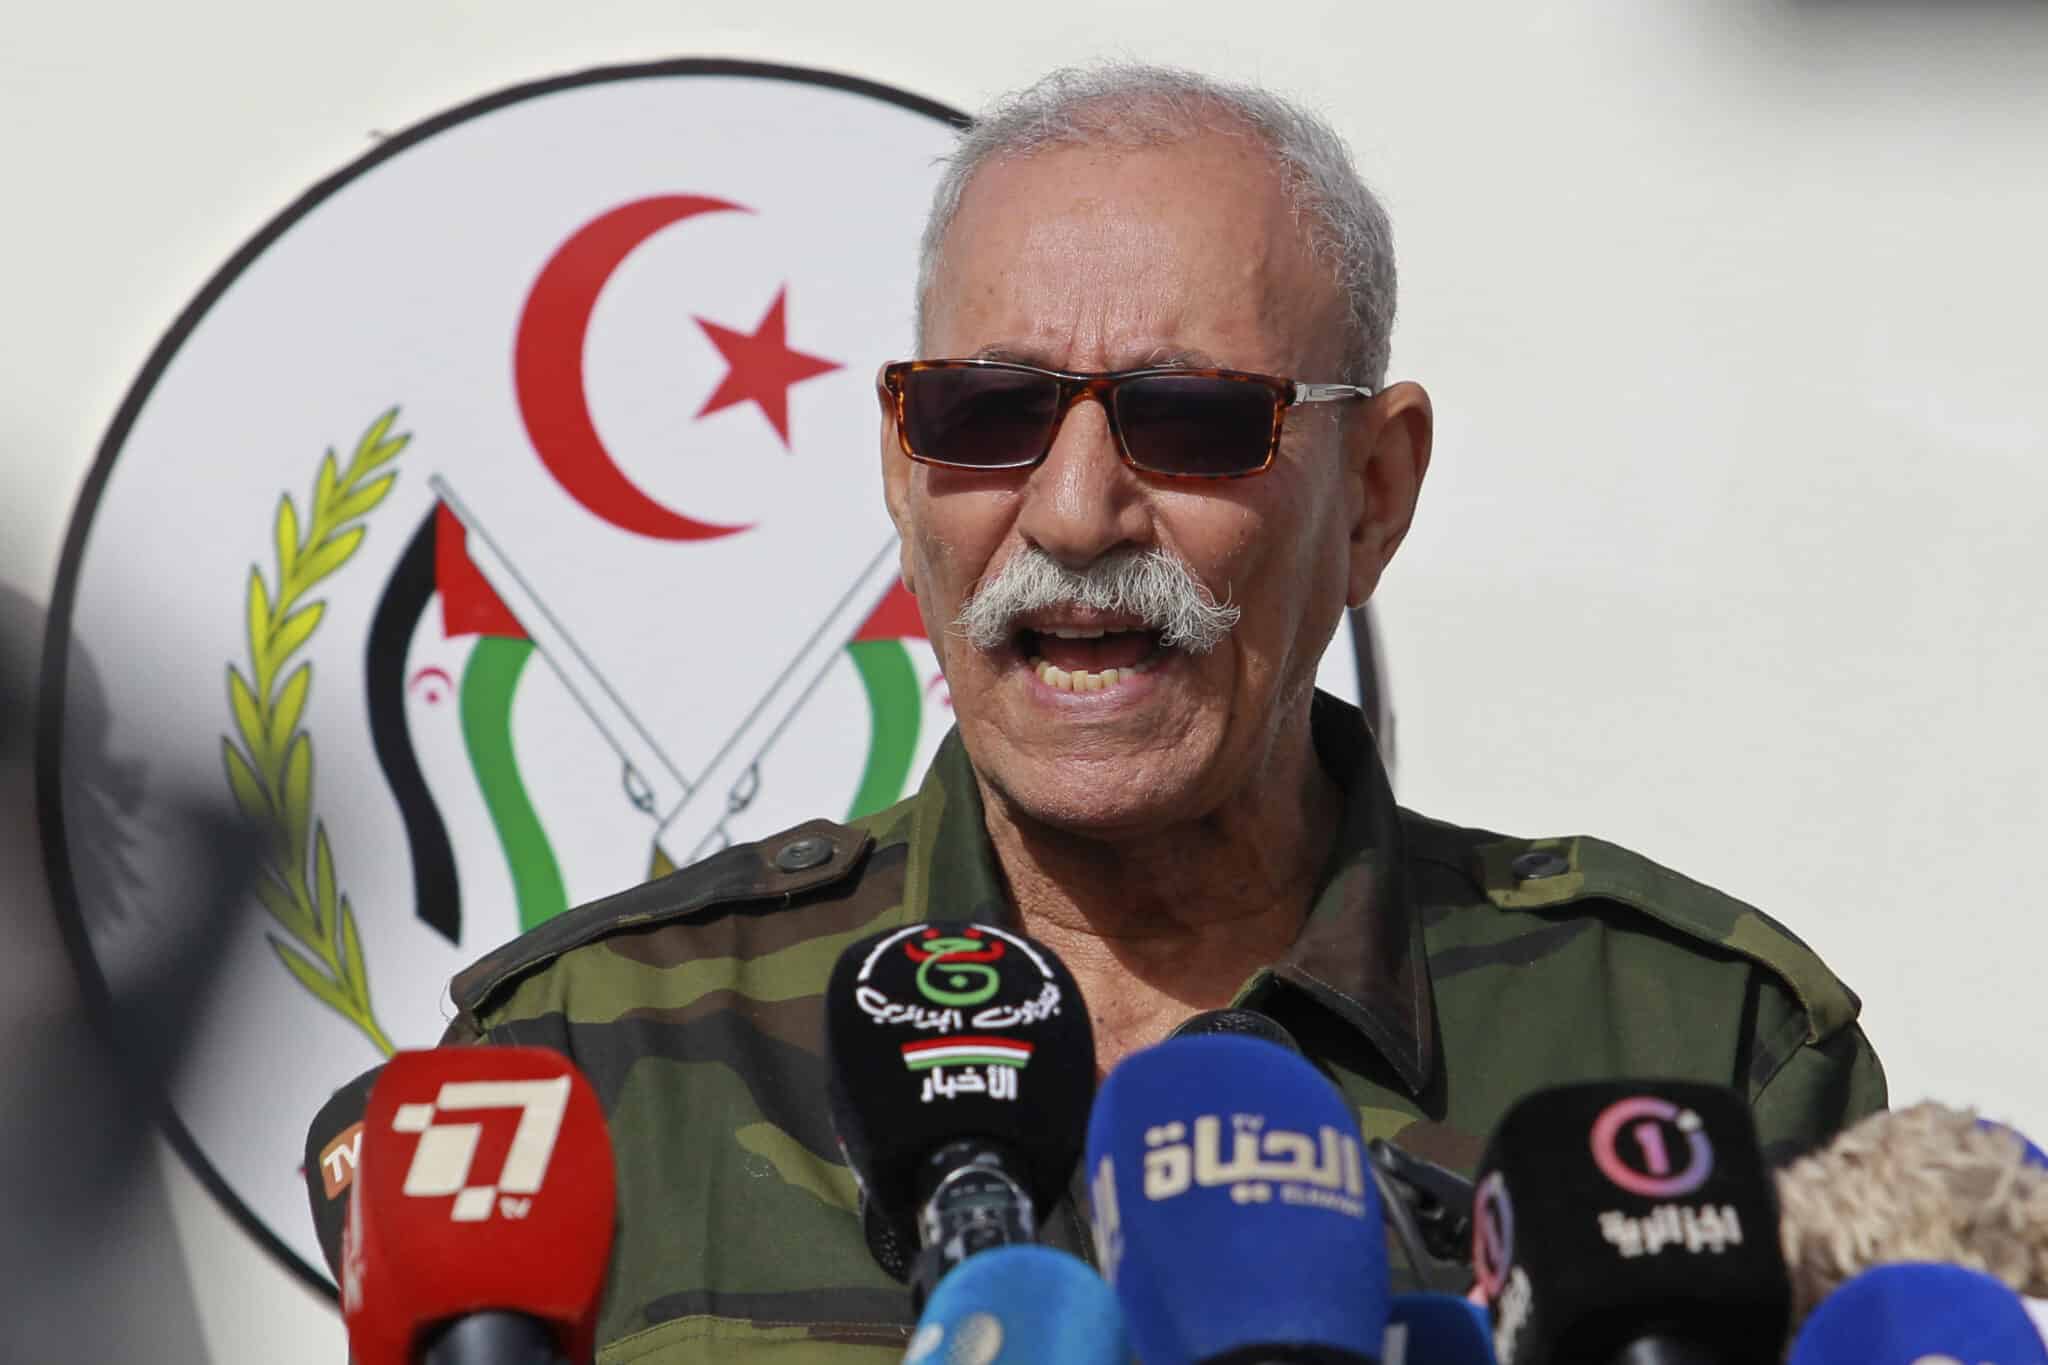 El Polisario acusa a Sánchez de condenar a España a "un túnel oscuro" y abocarla a "la peor crisis diplomática en décadas"